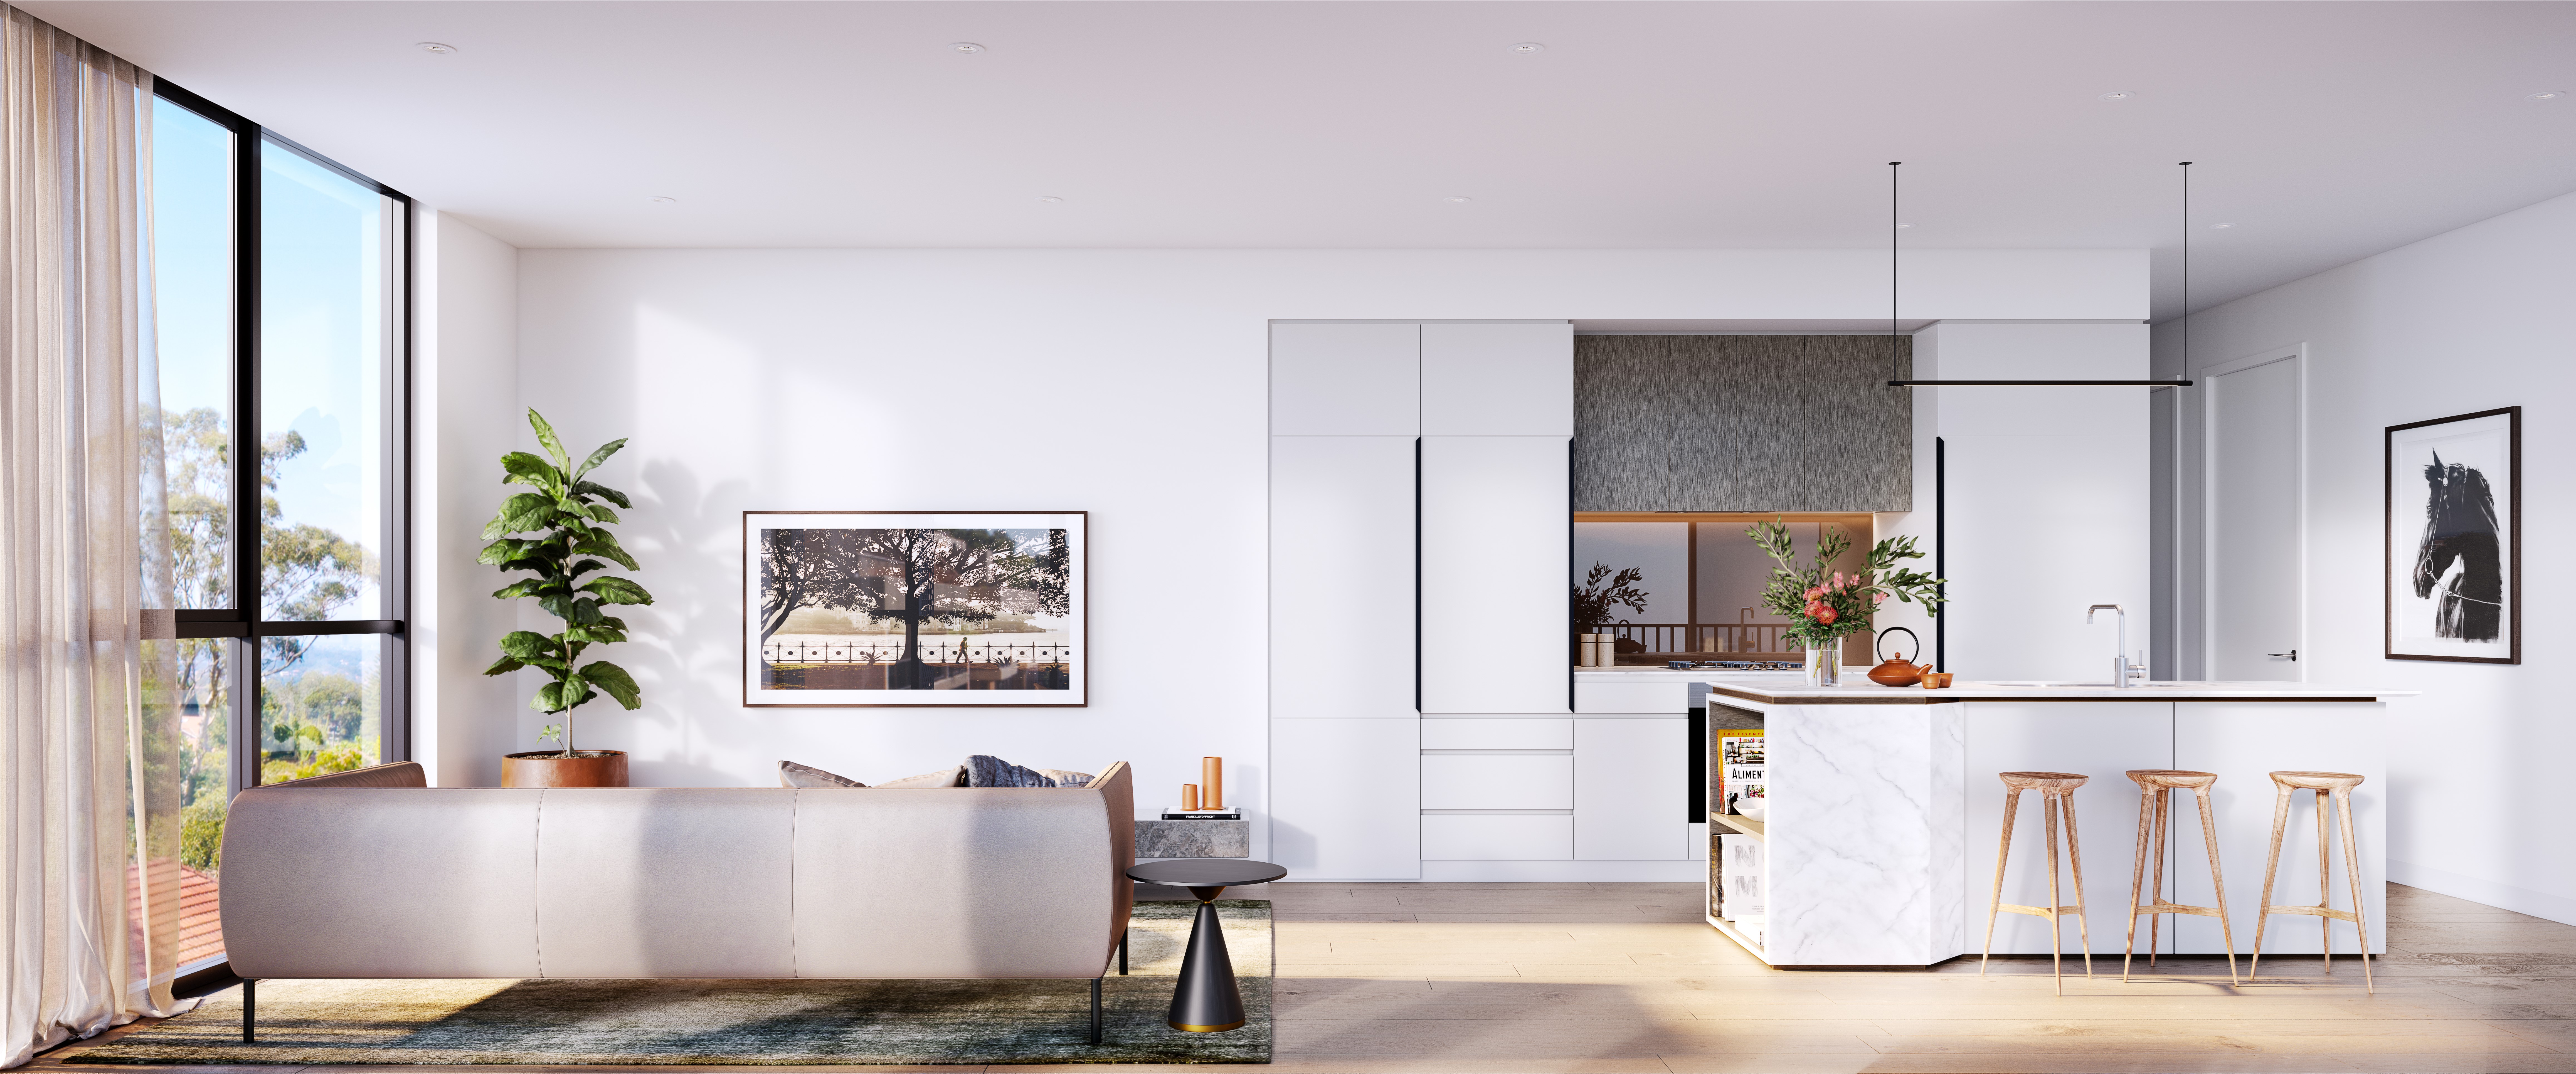 Kitchen - Dev Render - Urban Rest - North Sydney Apartments - Sydney